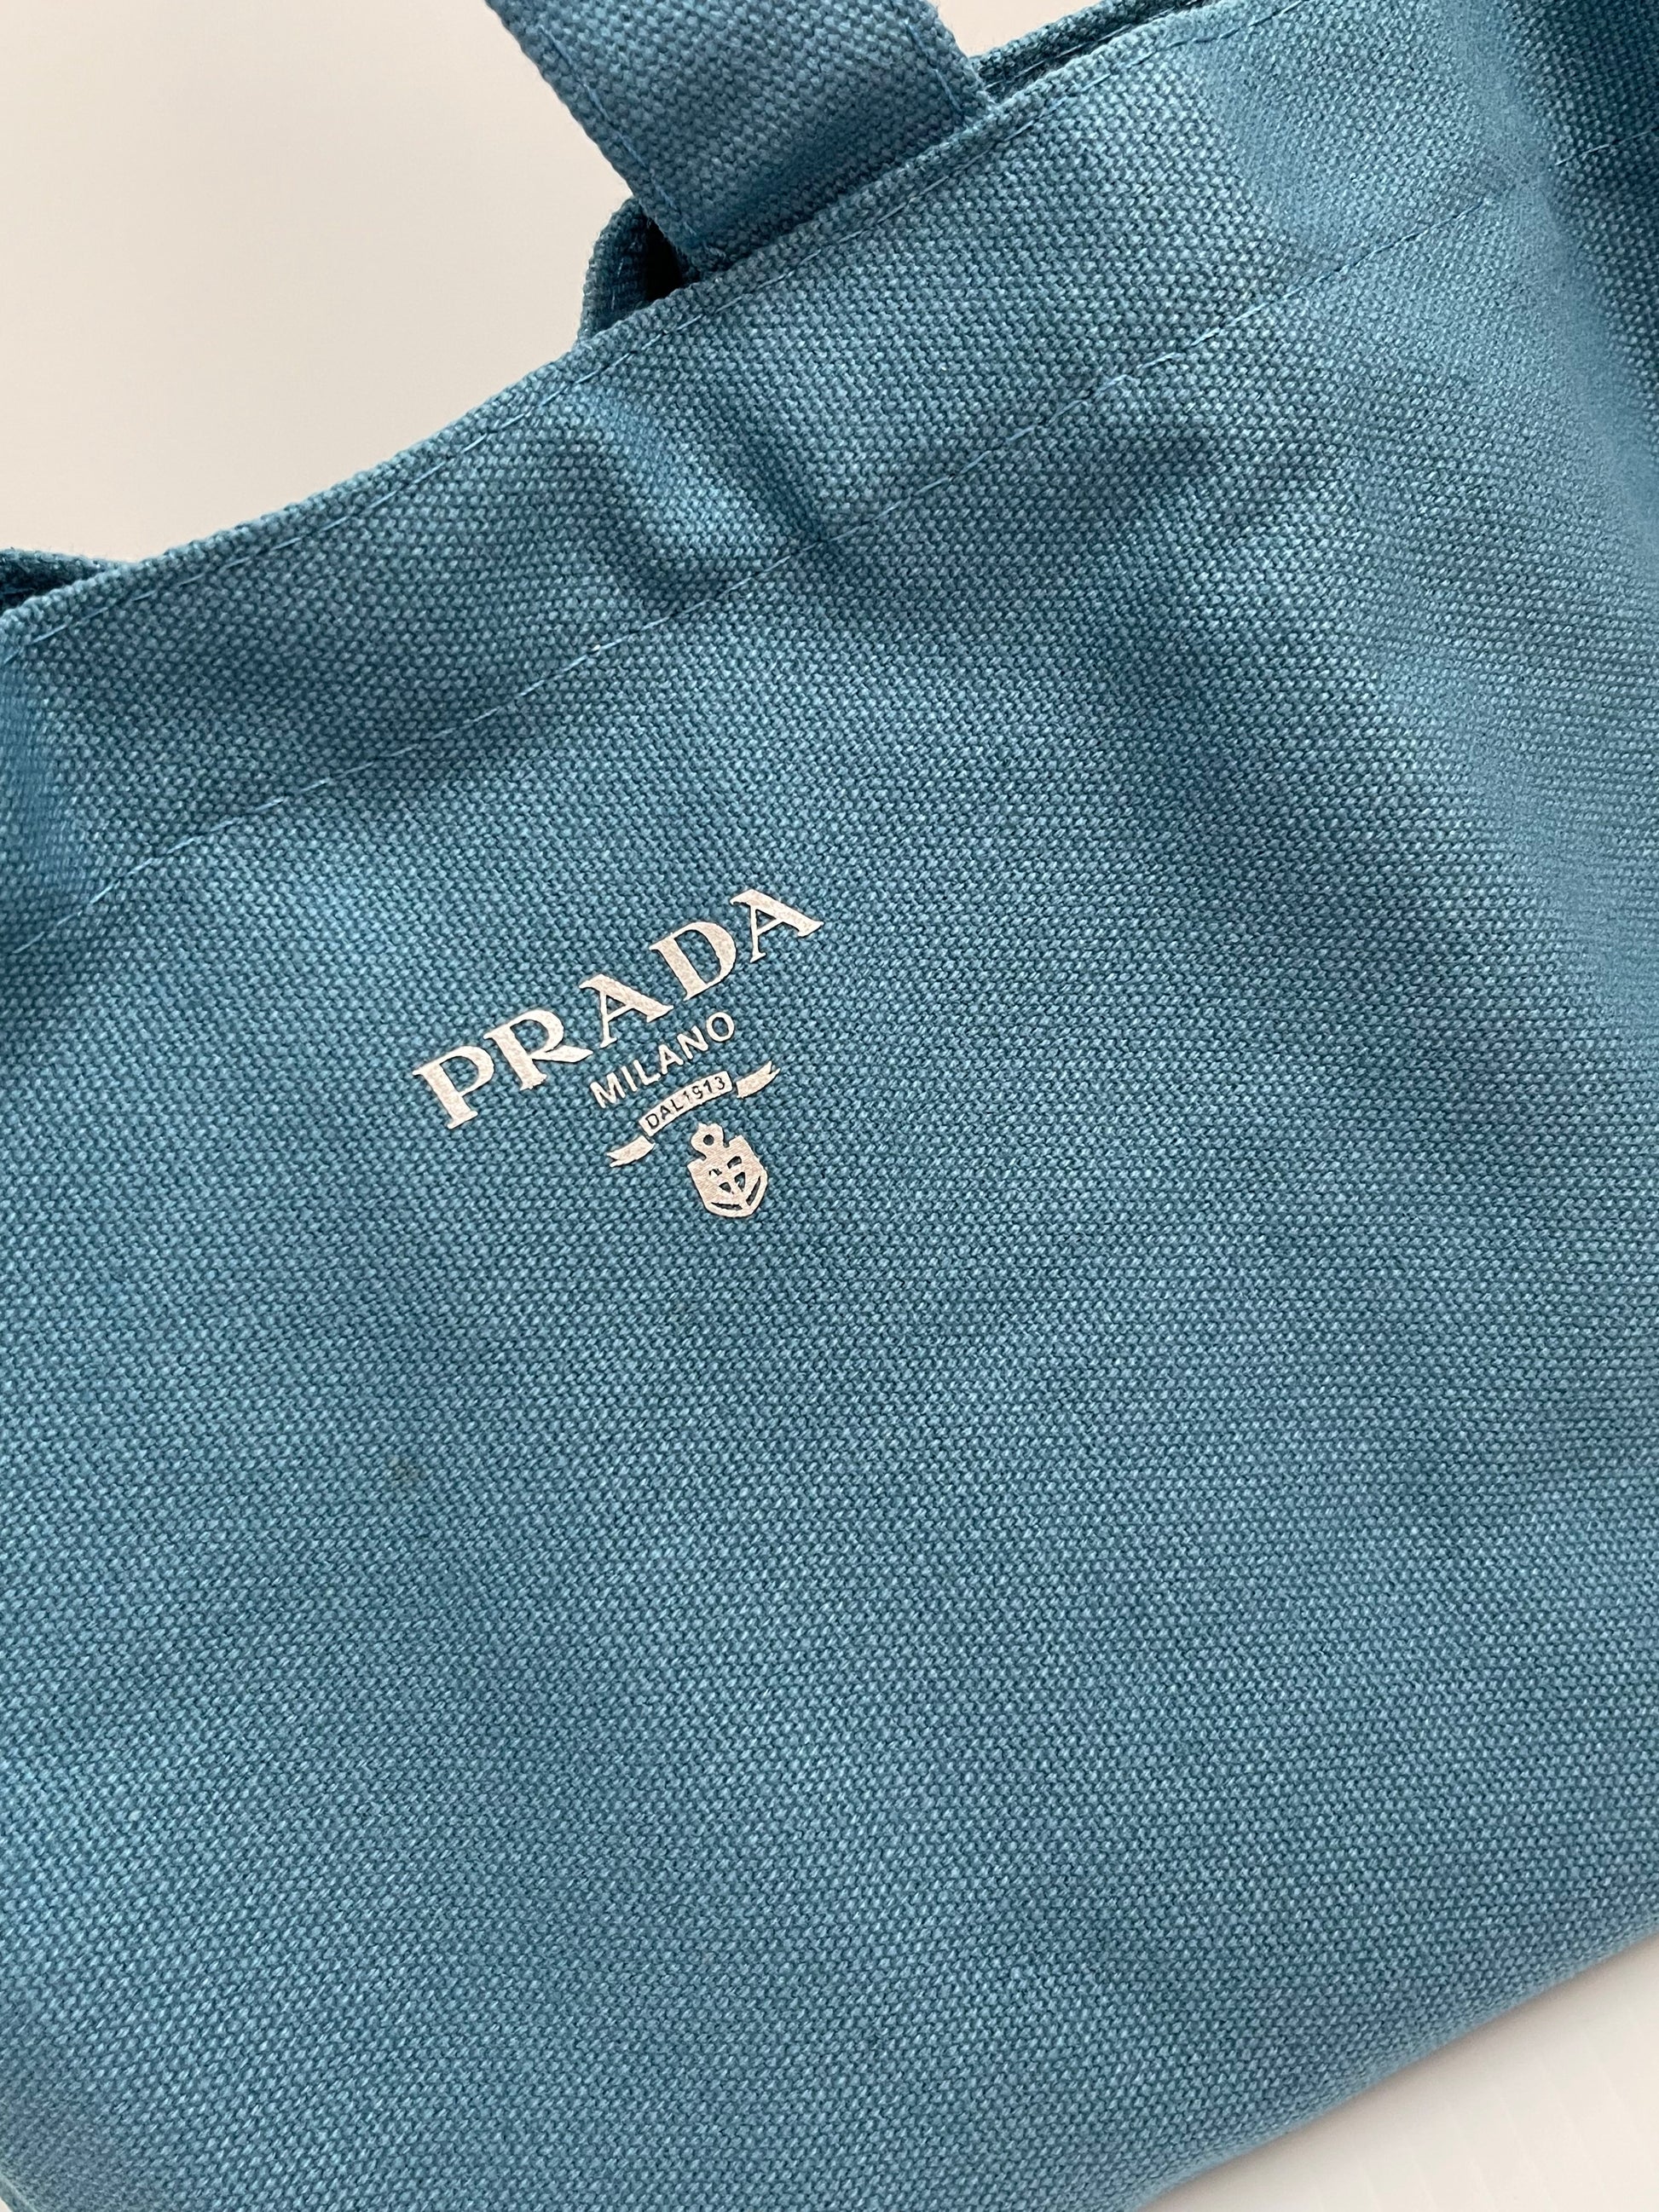 Prada Canvas Tote Bag  Rent Prada Handbags for $55/month